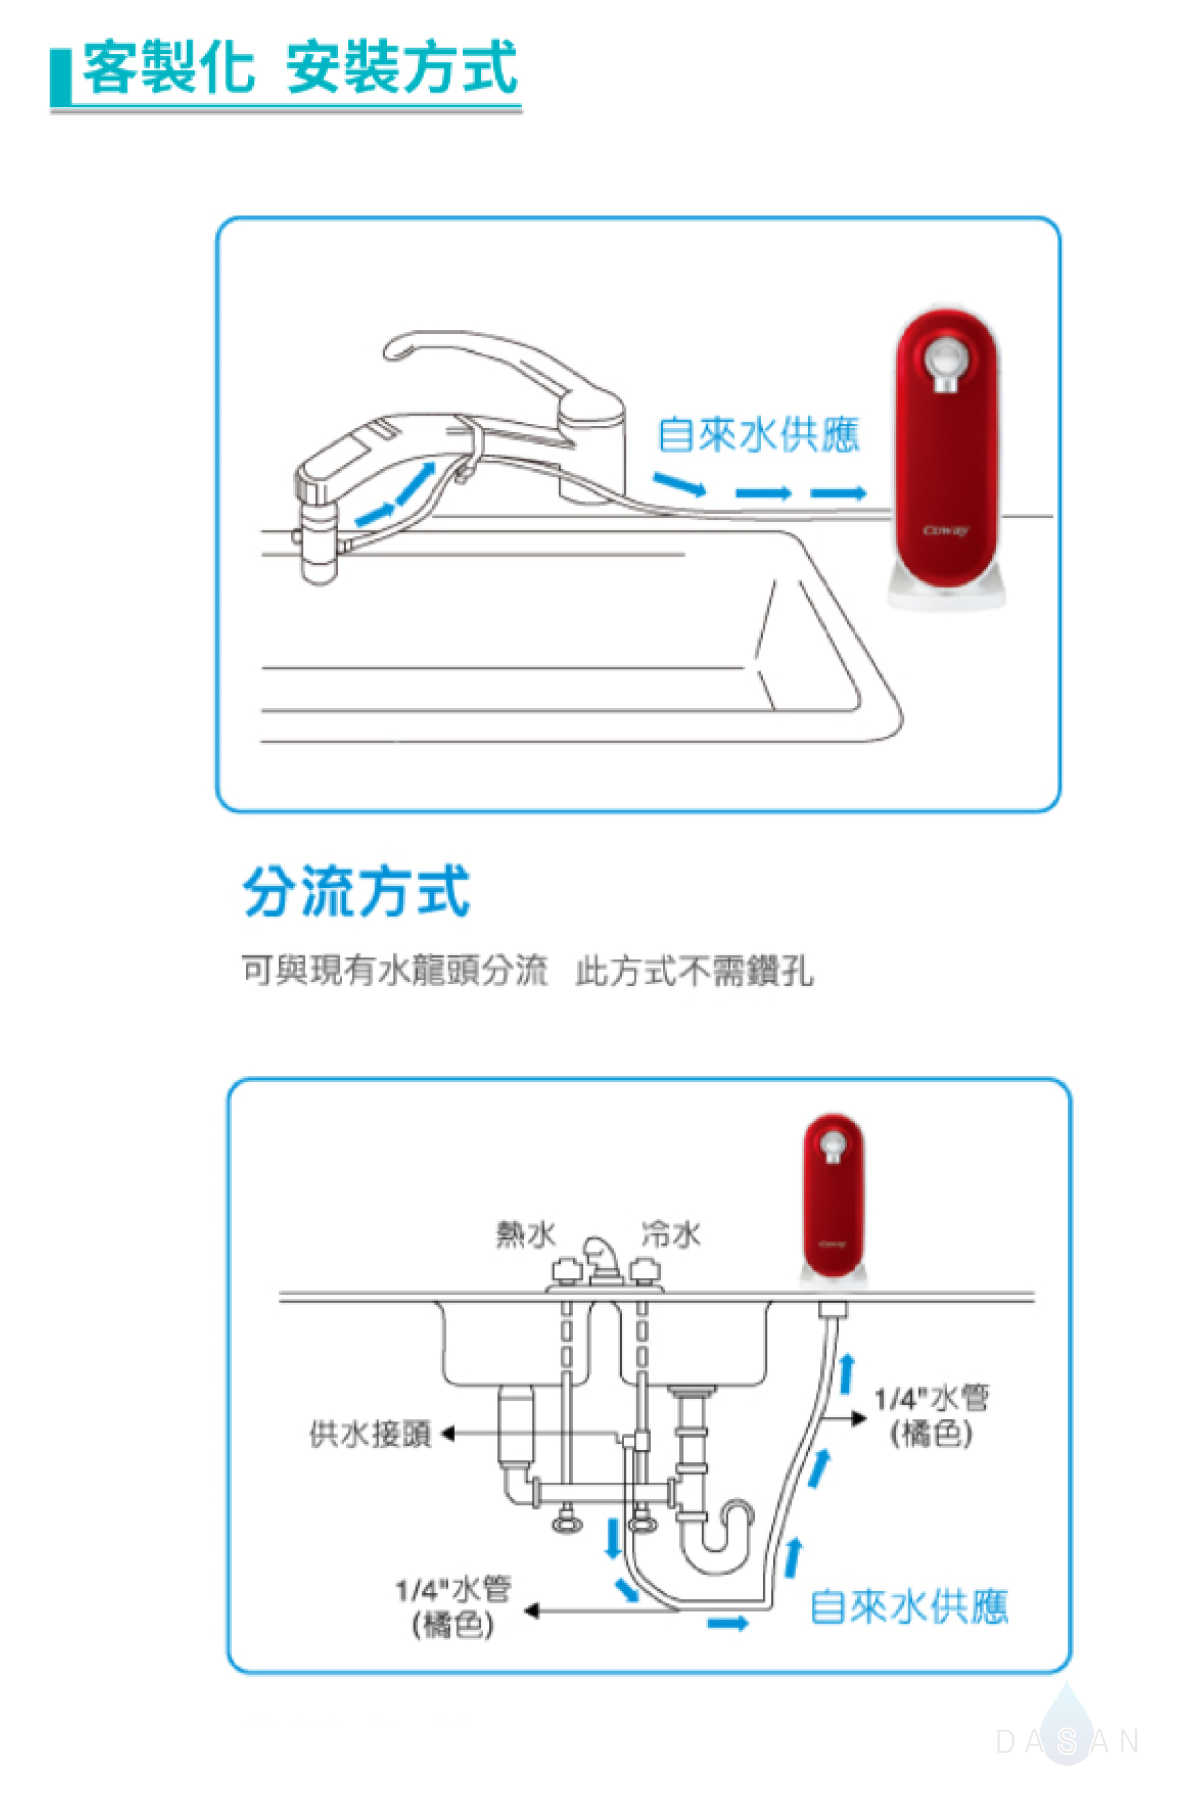 【Coway 格威】 P-205N 奈米高效淨水器 P205N 免插電 桌上廚下皆可 DIY 安裝